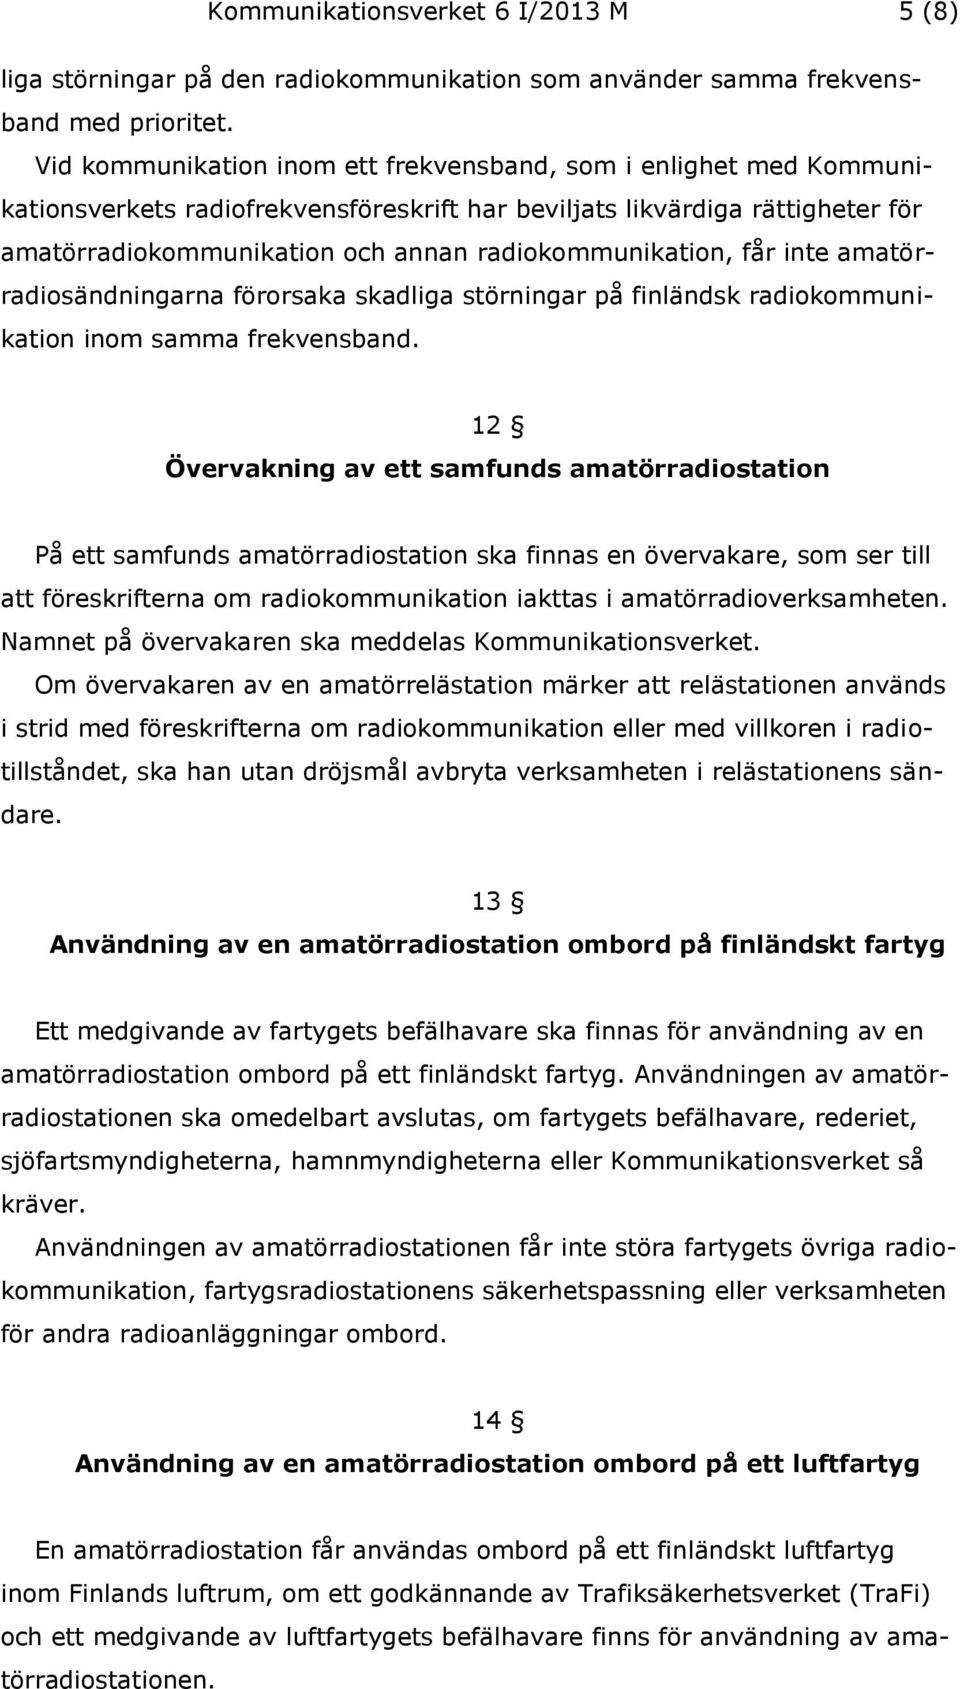 radiokommunikation, får inte amatörradiosändningarna förorsaka skadliga störningar på finländsk radiokommunikation inom samma frekvensband.